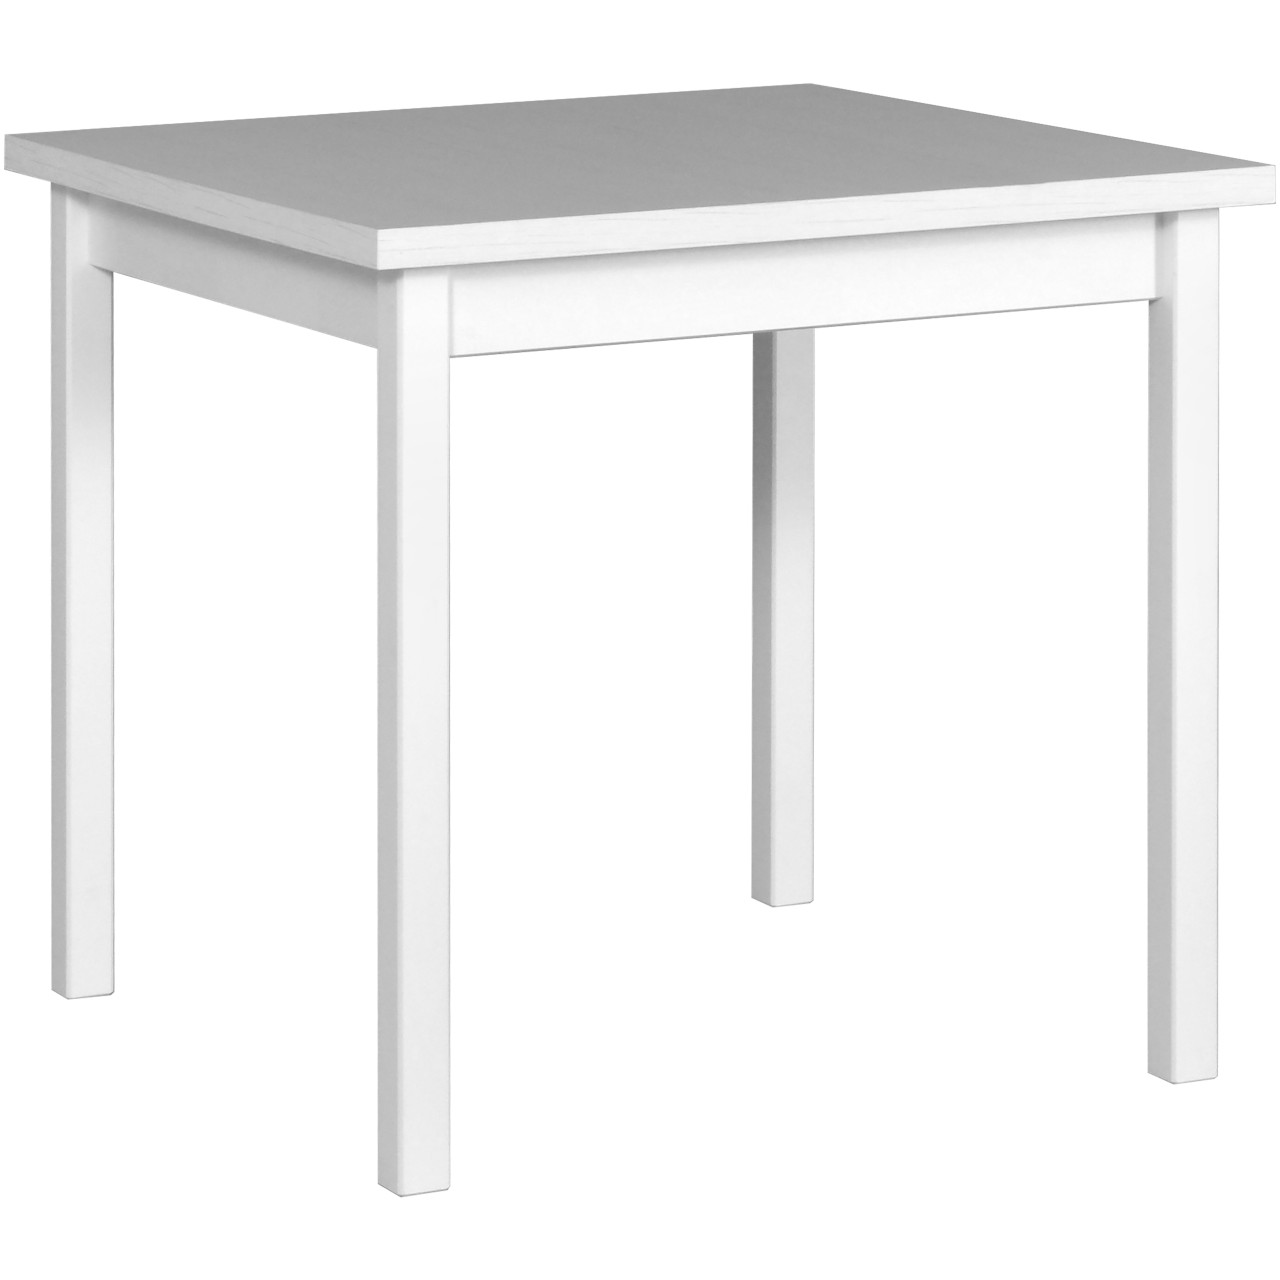 Tisch MAX 9 80x80 weiß laminat